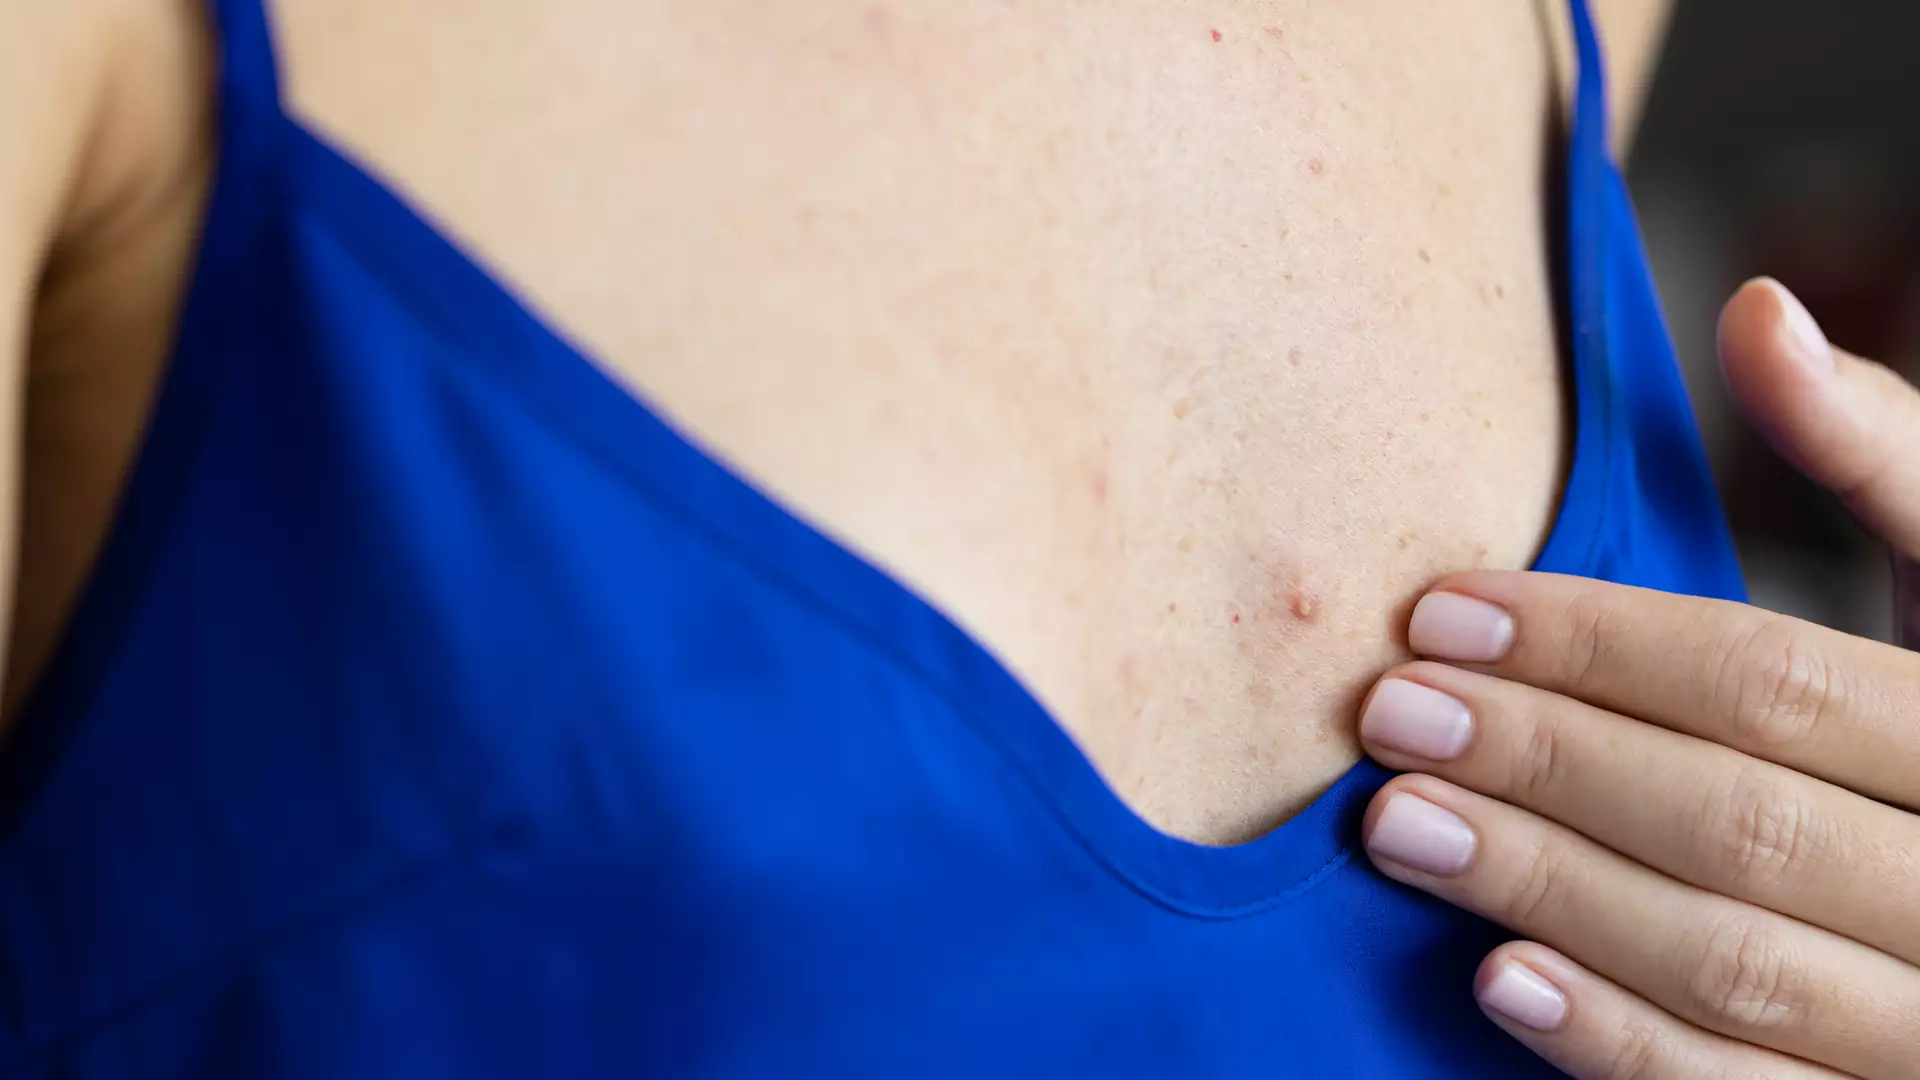 Dermatolog o krostkach na piersiach. Natychmiast odstaw popularny produkt